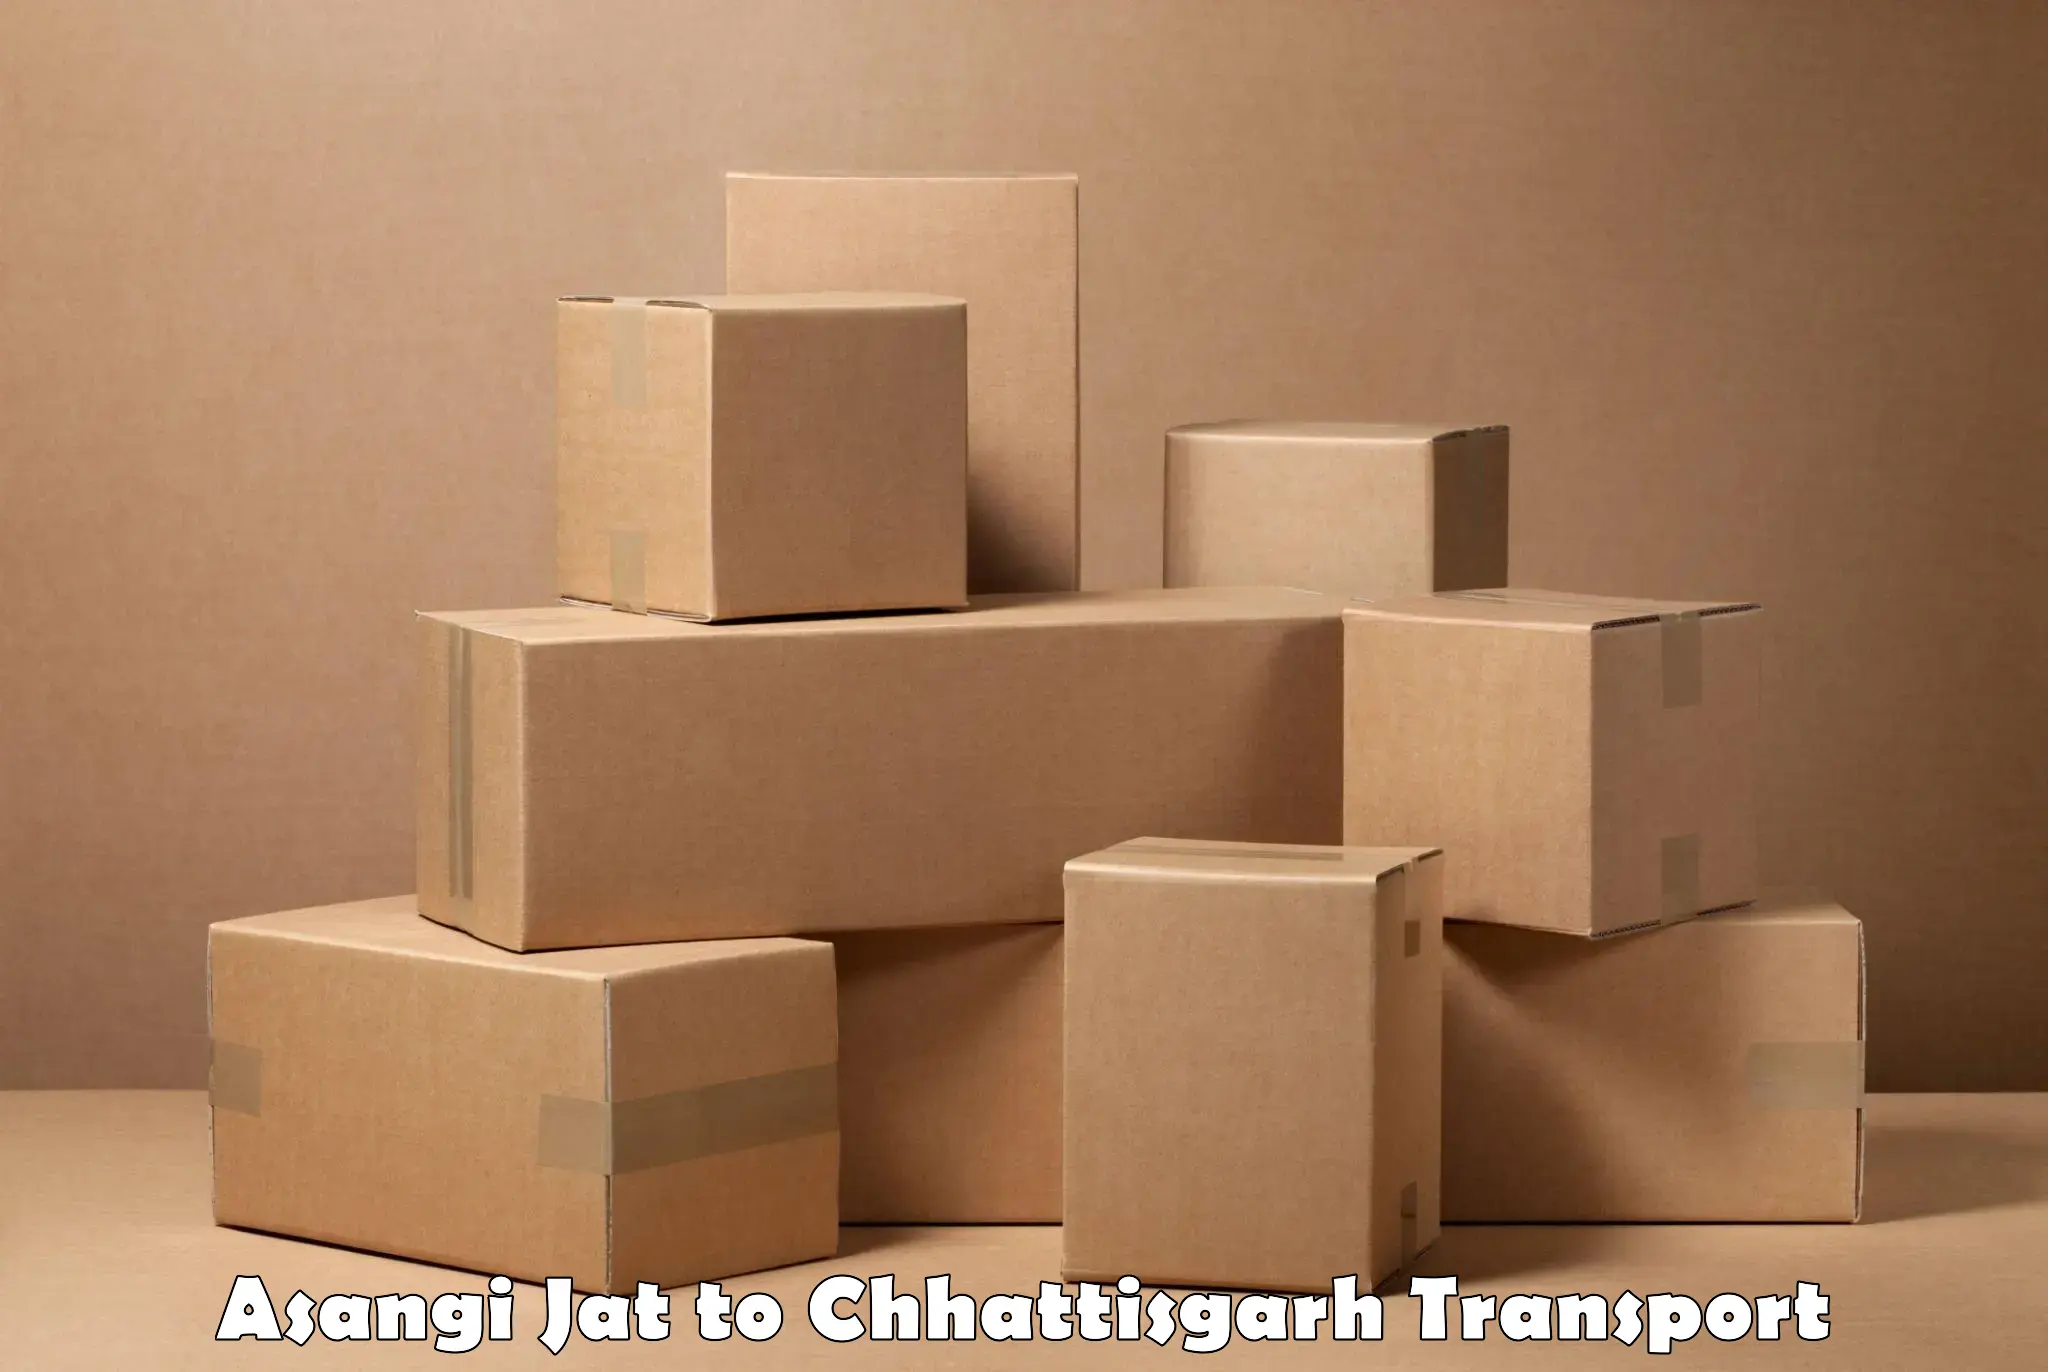 Cargo transport services Asangi Jat to Pithora